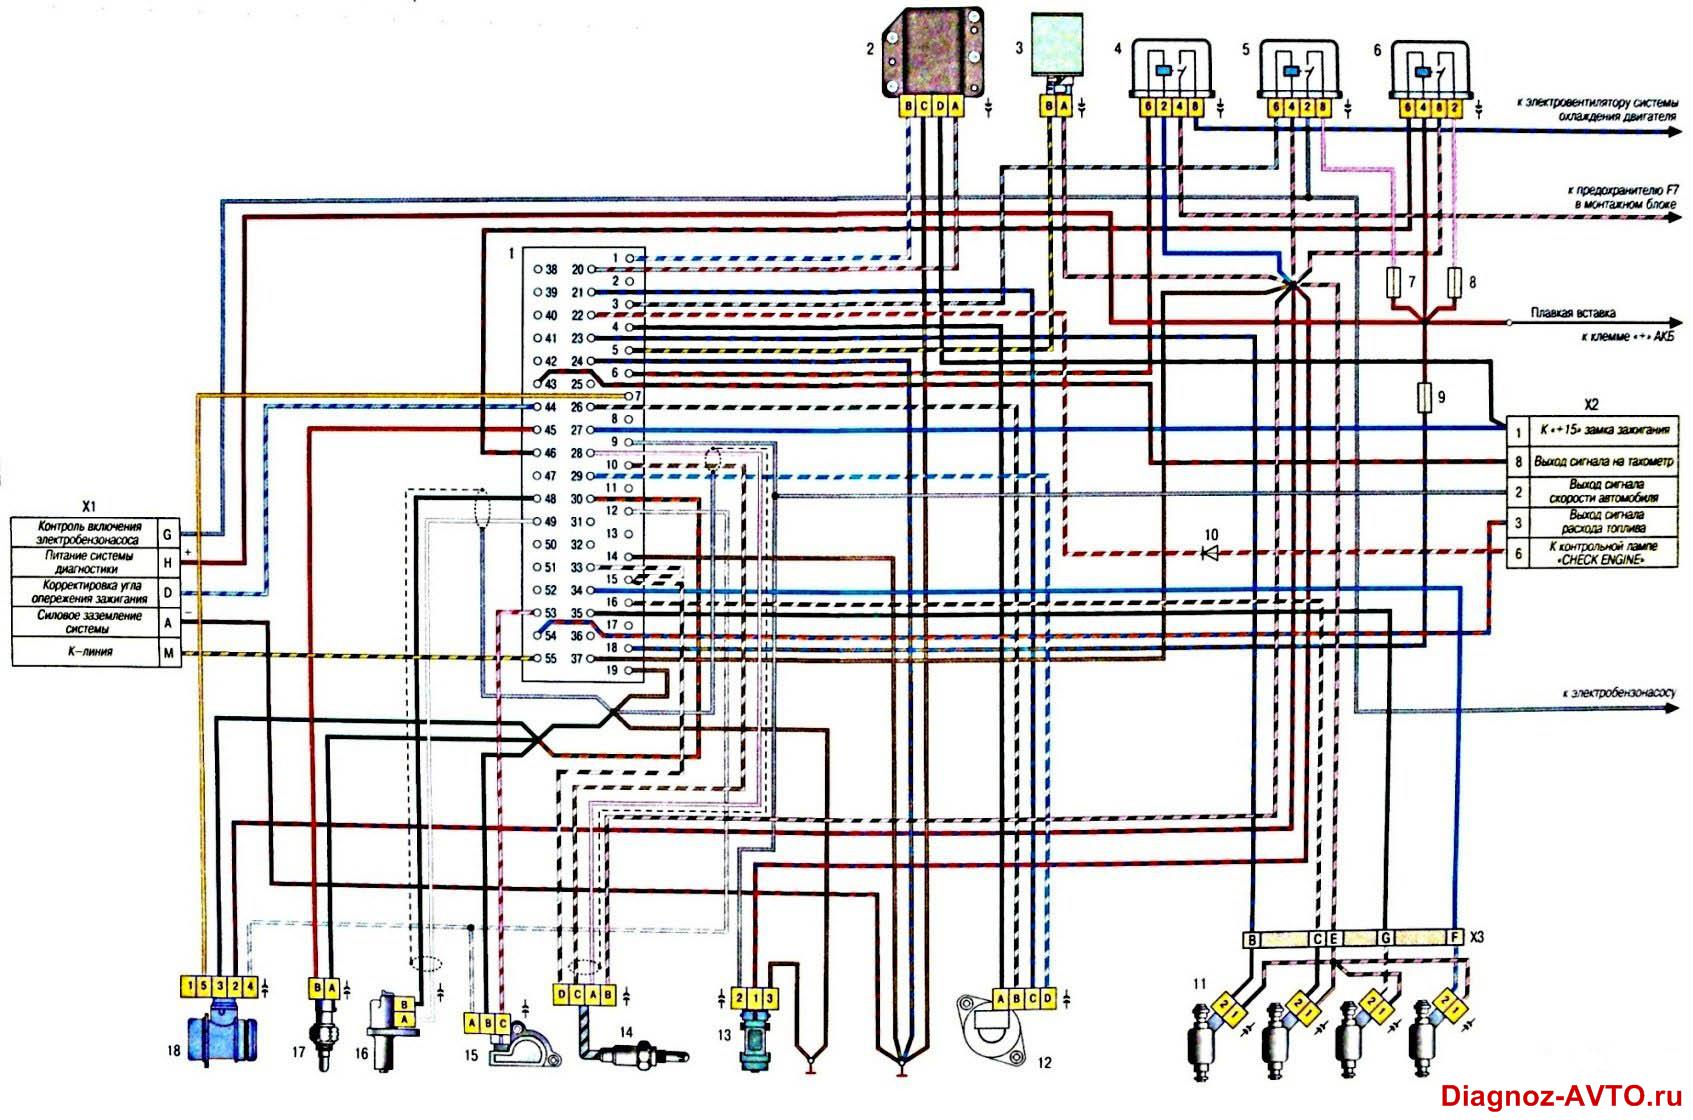 Электрическая схема ЭСУД классических автомобилей ВАЗ с контроллером Январь 5.1.3